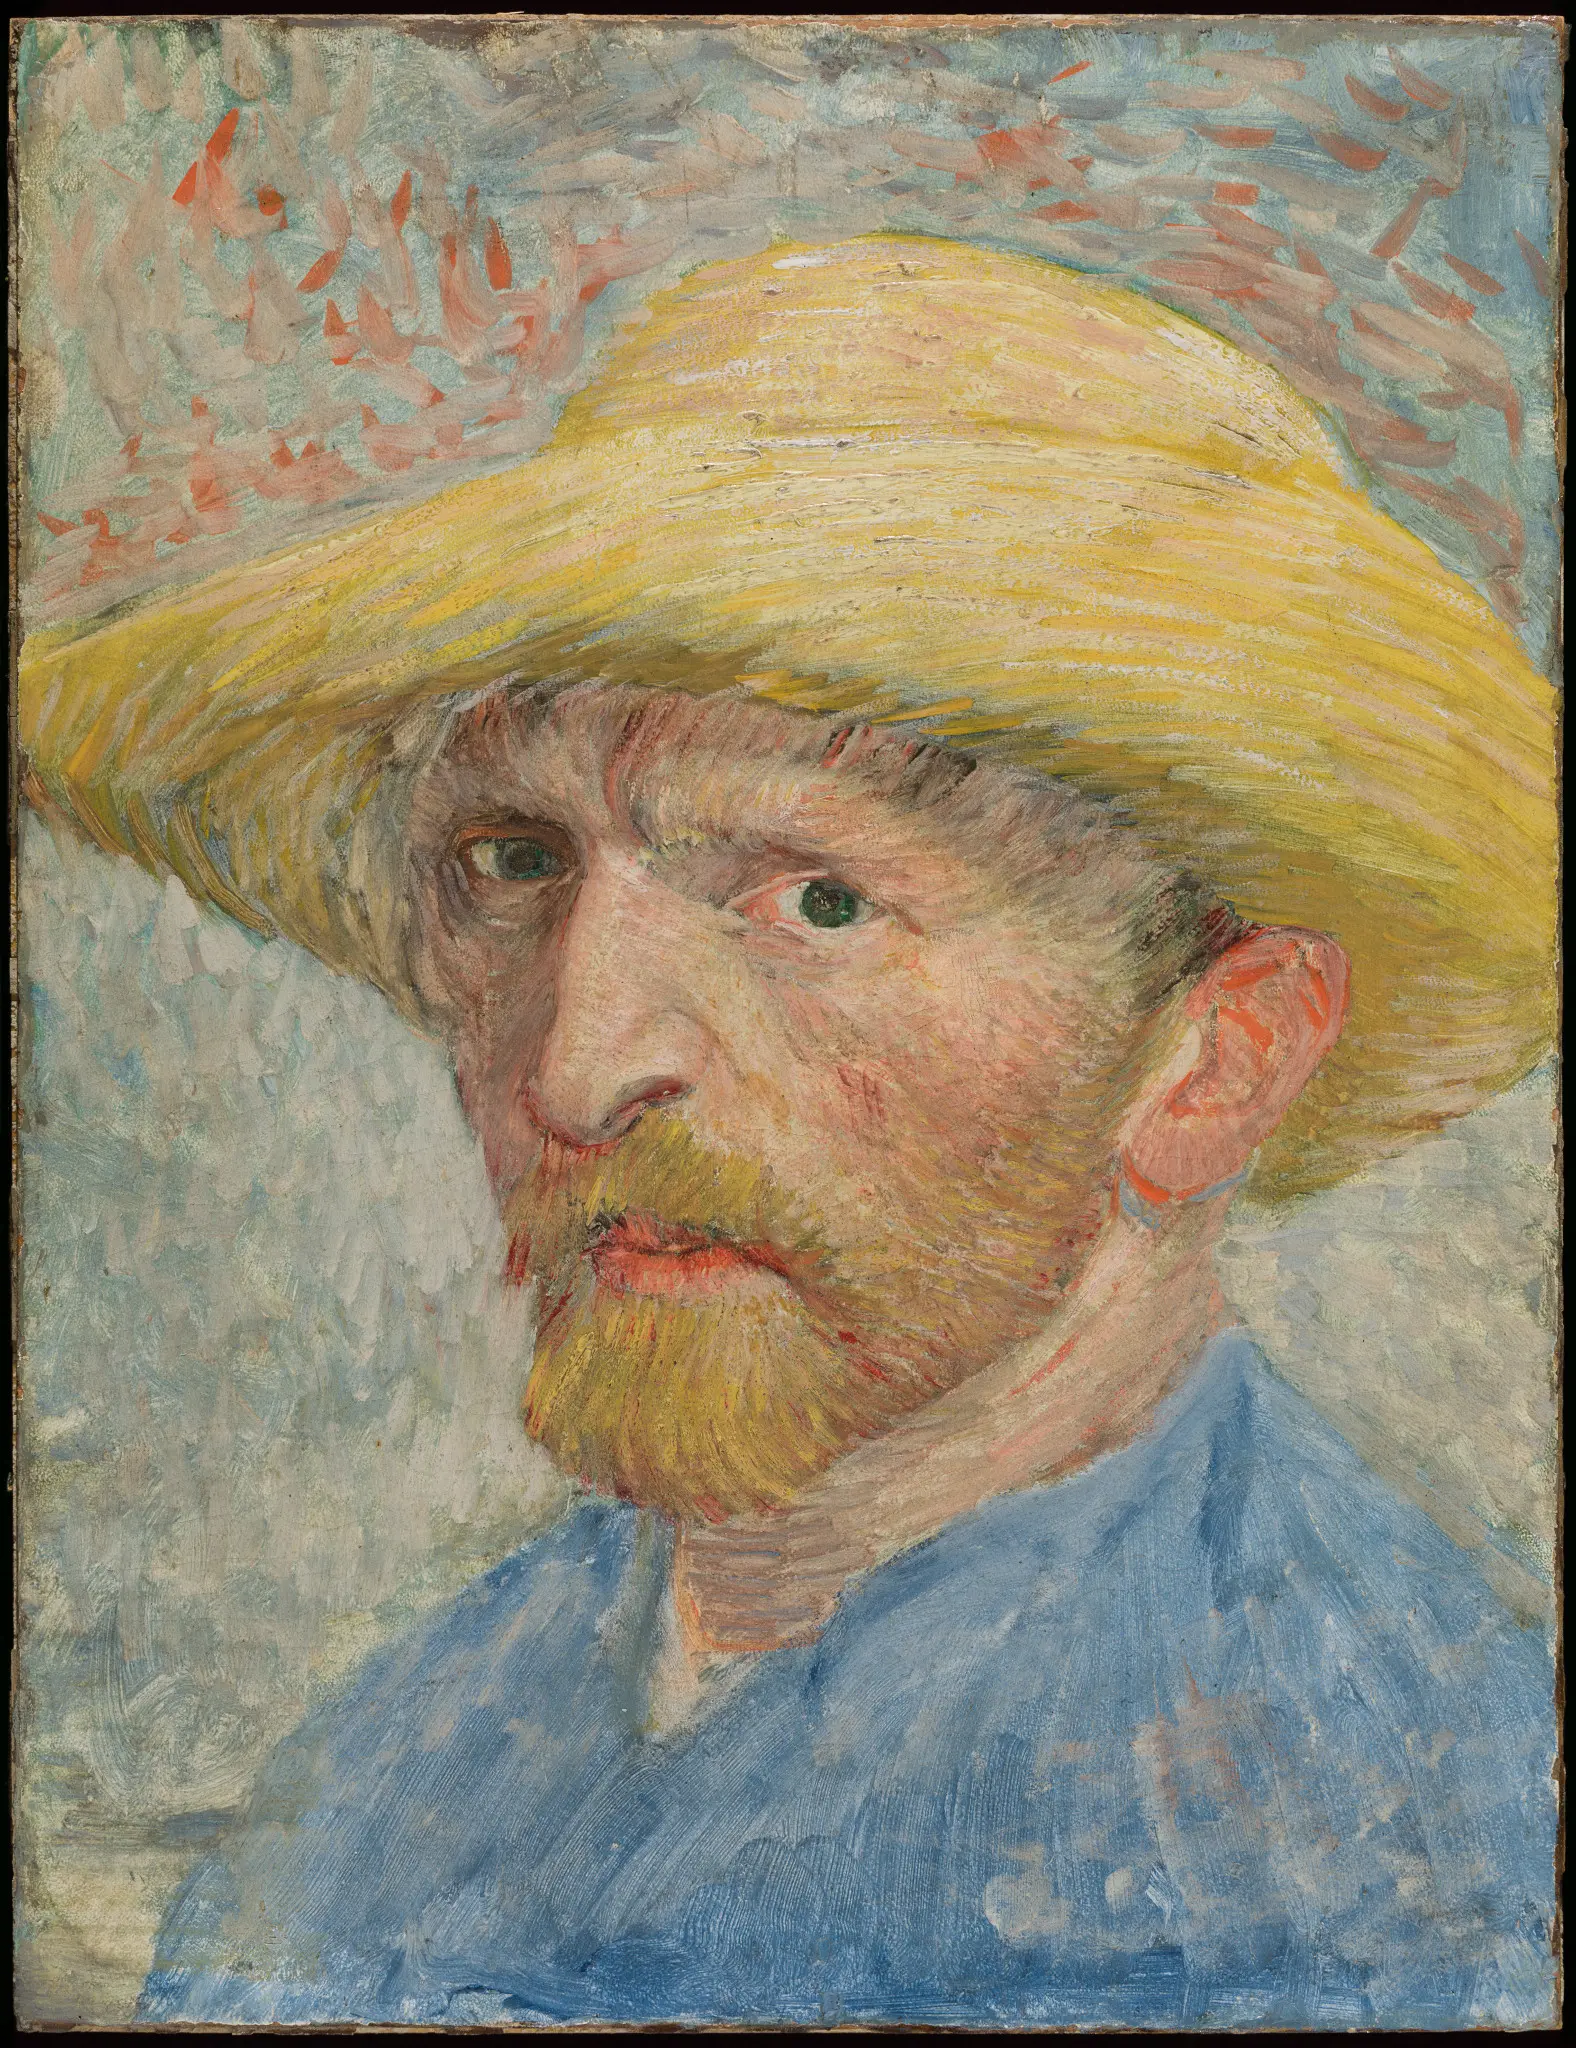 Аутопортрет by Vincent van Gogh - 1887. - 34.9 × 26.7 cm 